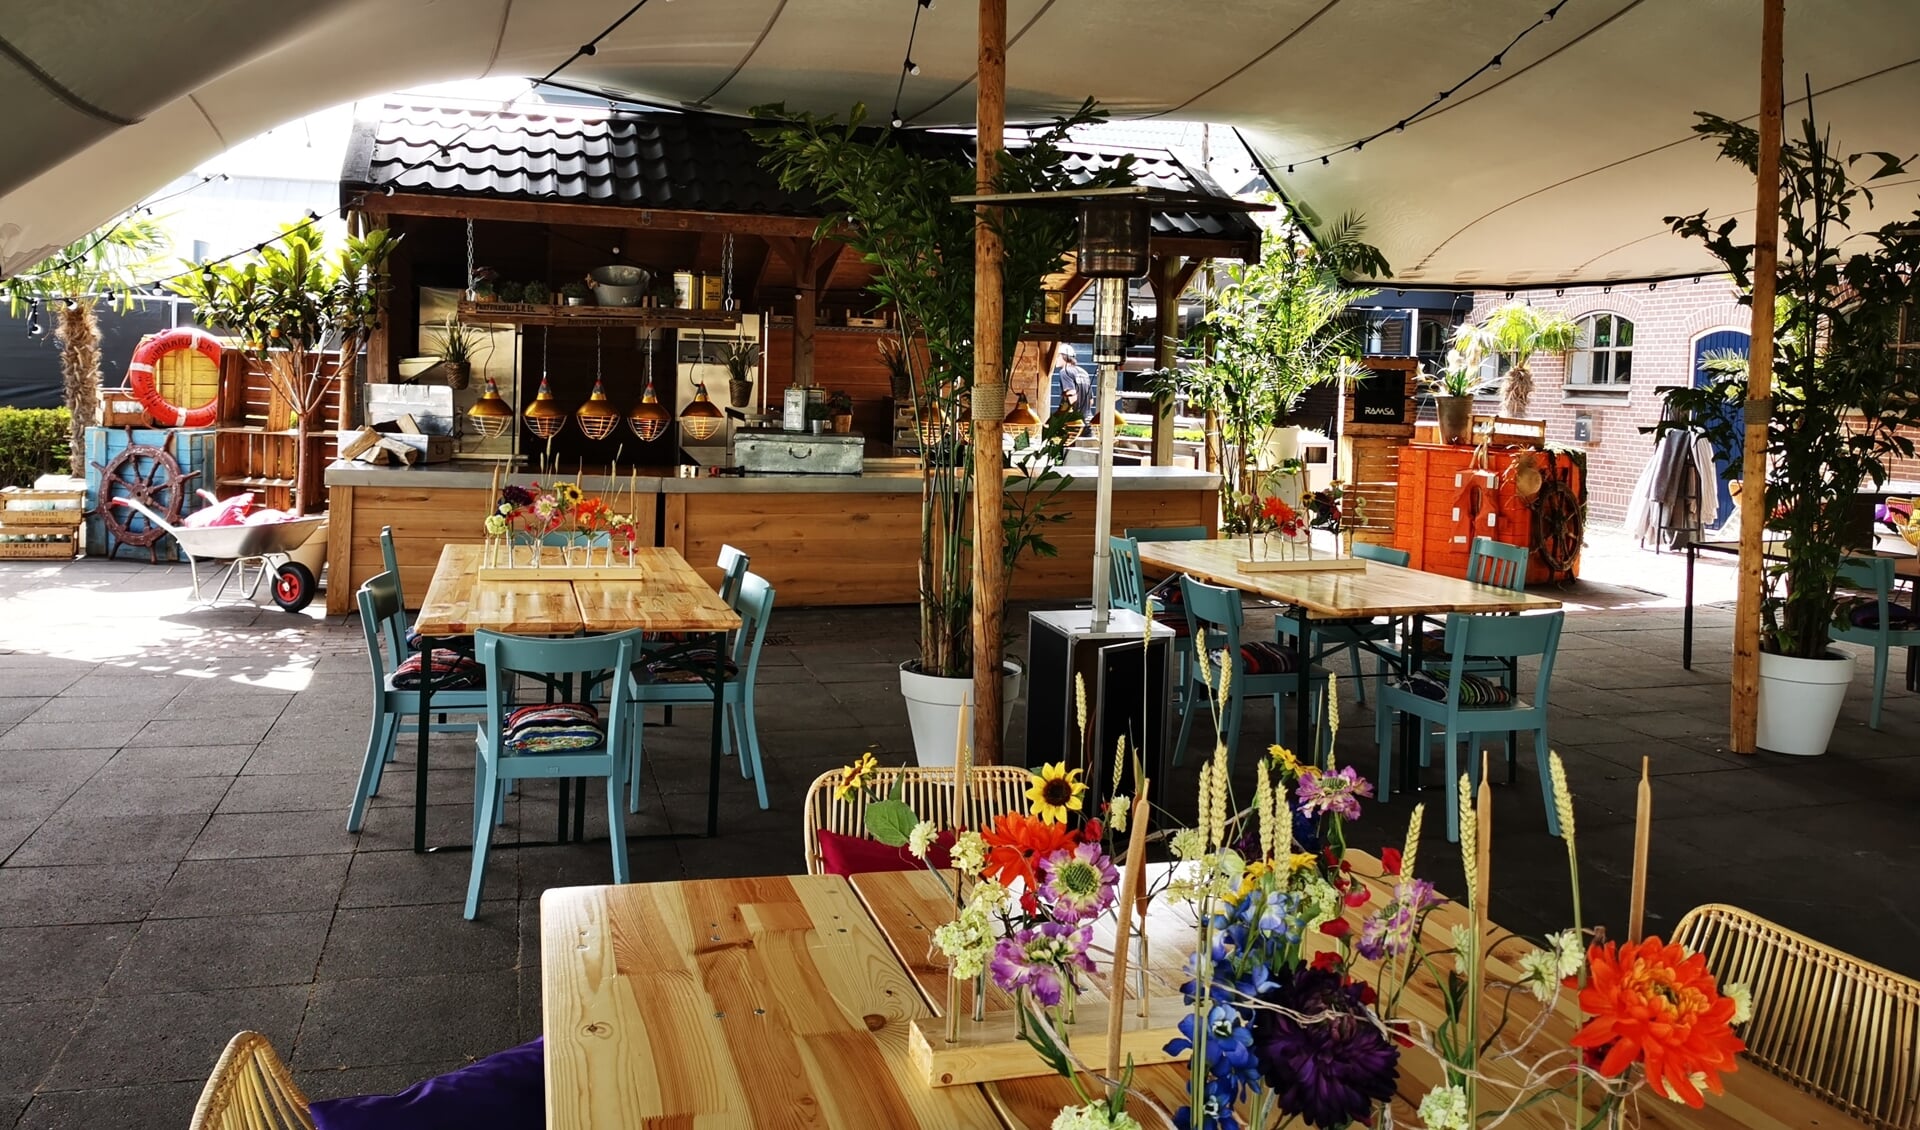 Op het zonnige terras tegen de gevel van de historische boerderij ’t Ulhst heeft Hart van Holland een gezellig buitenrestaurant geopend.